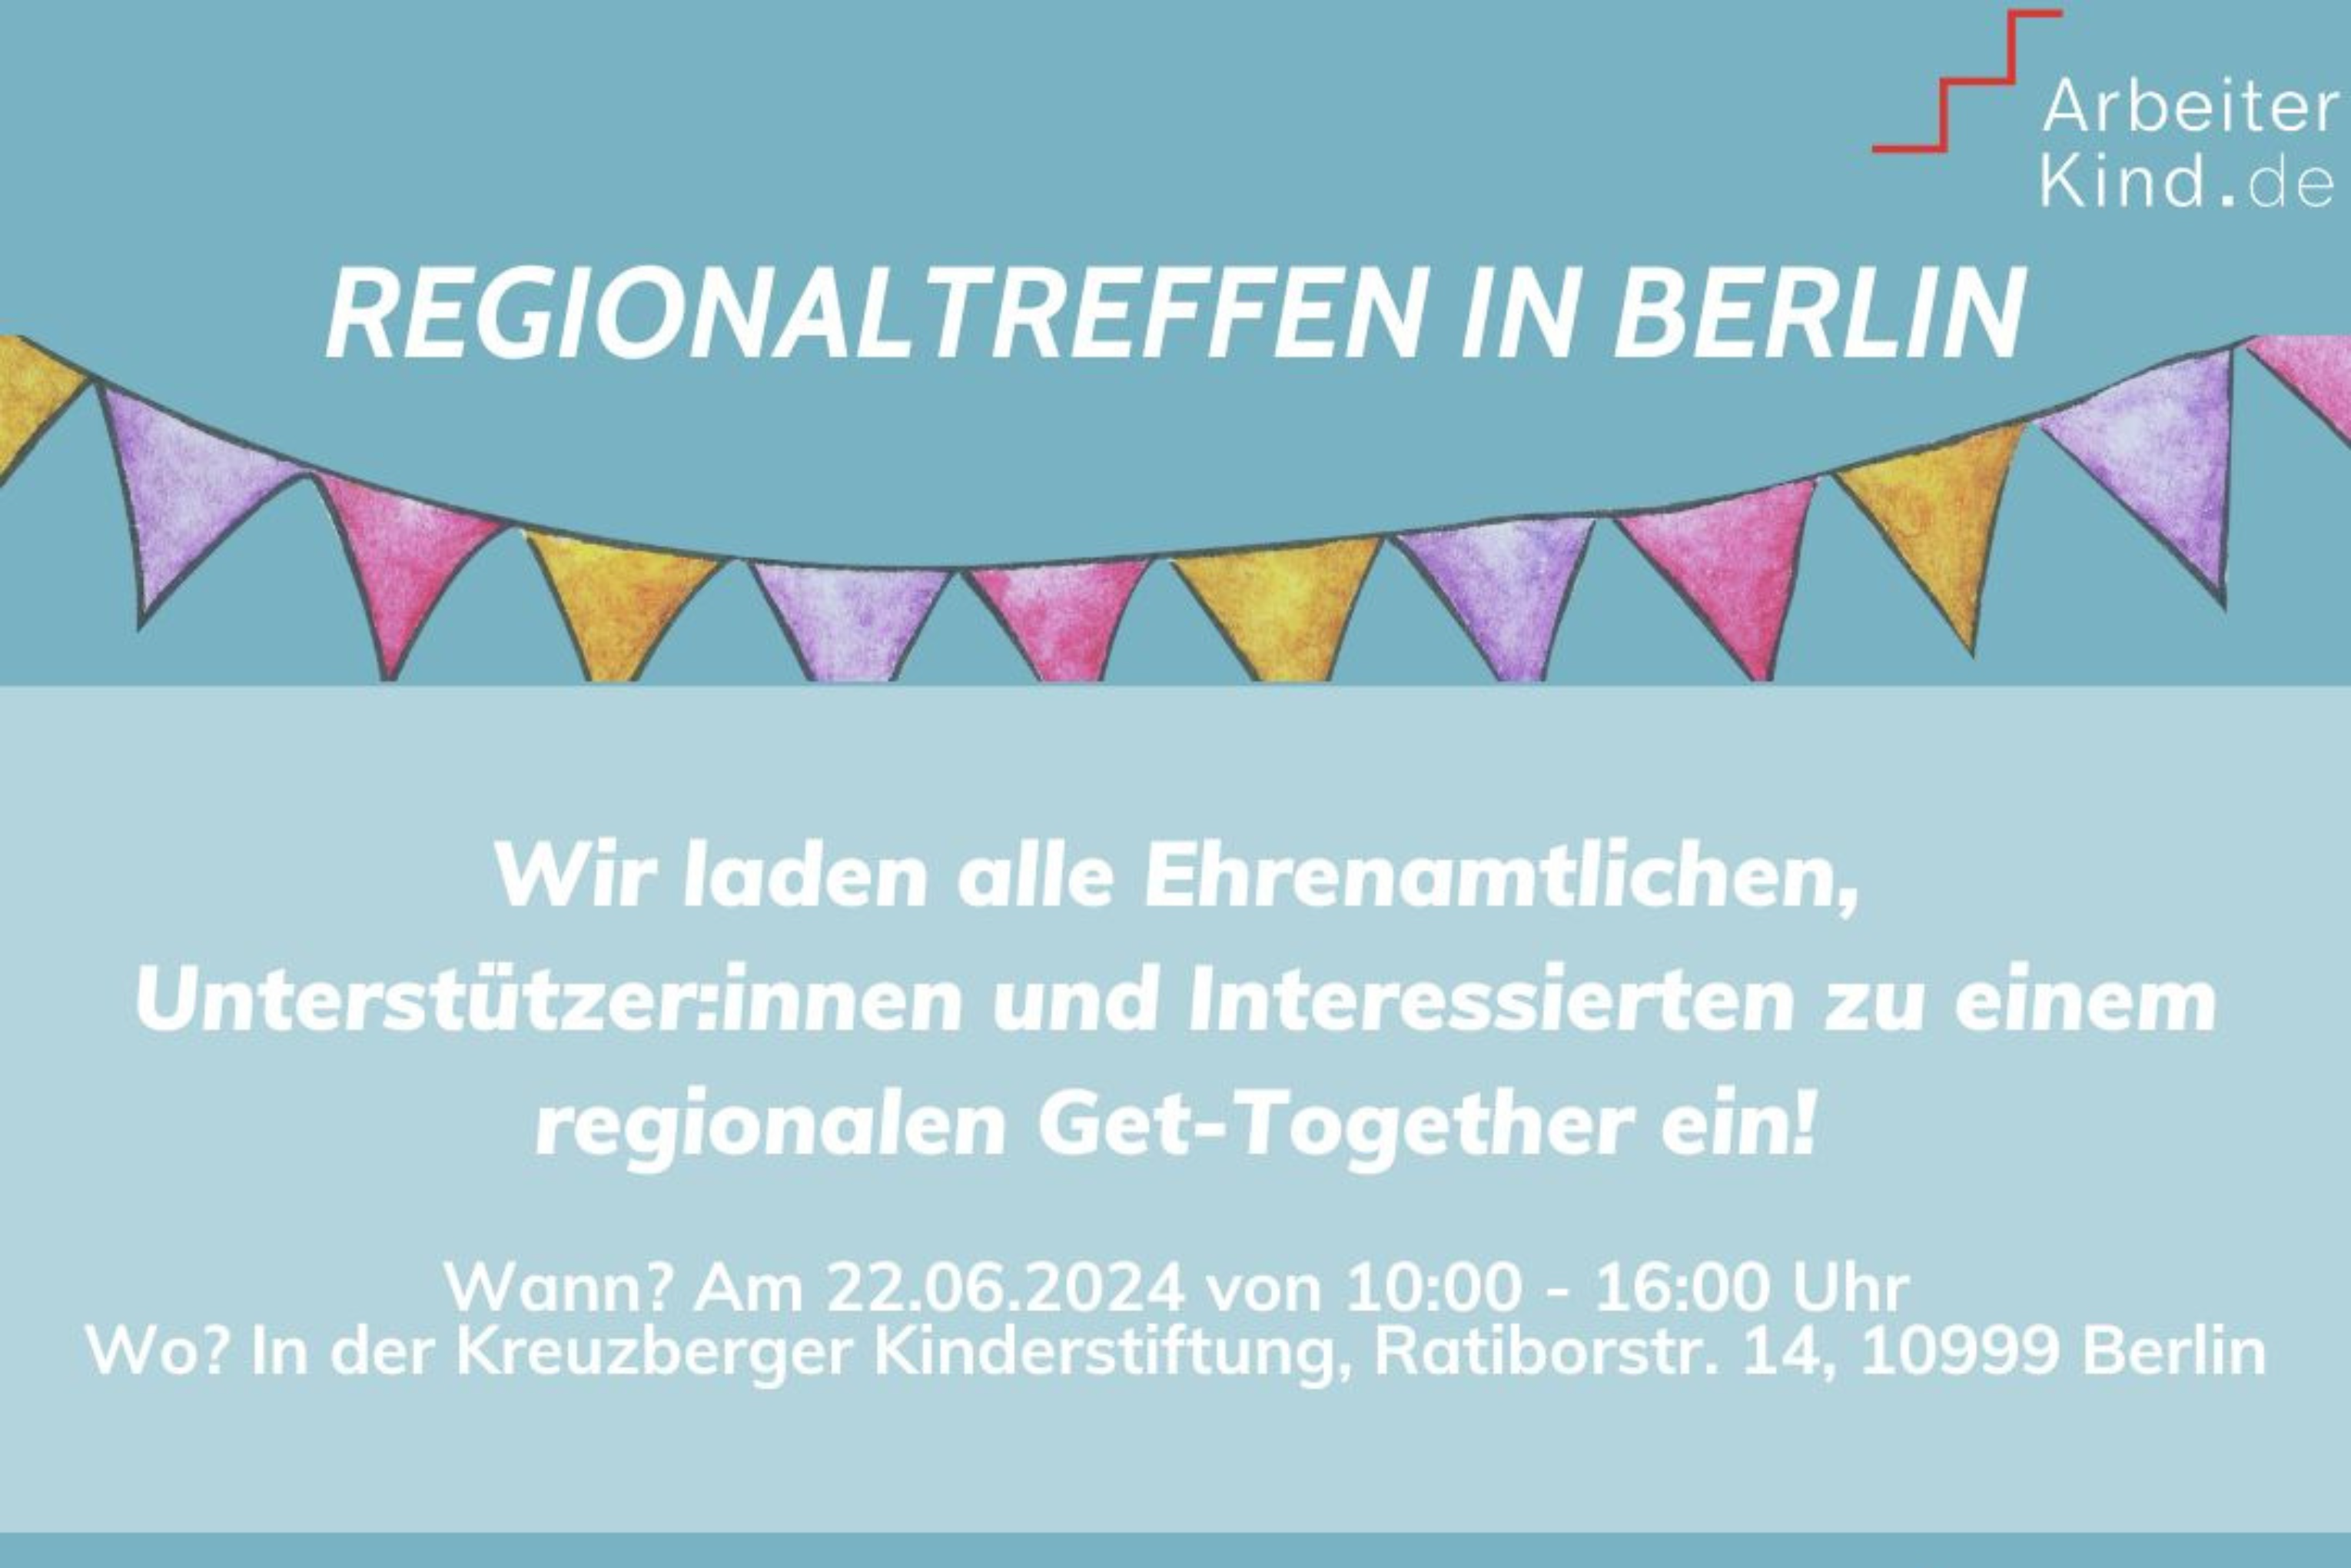 Einladungskarte zum Regionaltreffen von ArbeiterKind.de. Hintergrund in türkis, Schrift in weiß mit Angaben zu Ort und Zeit.